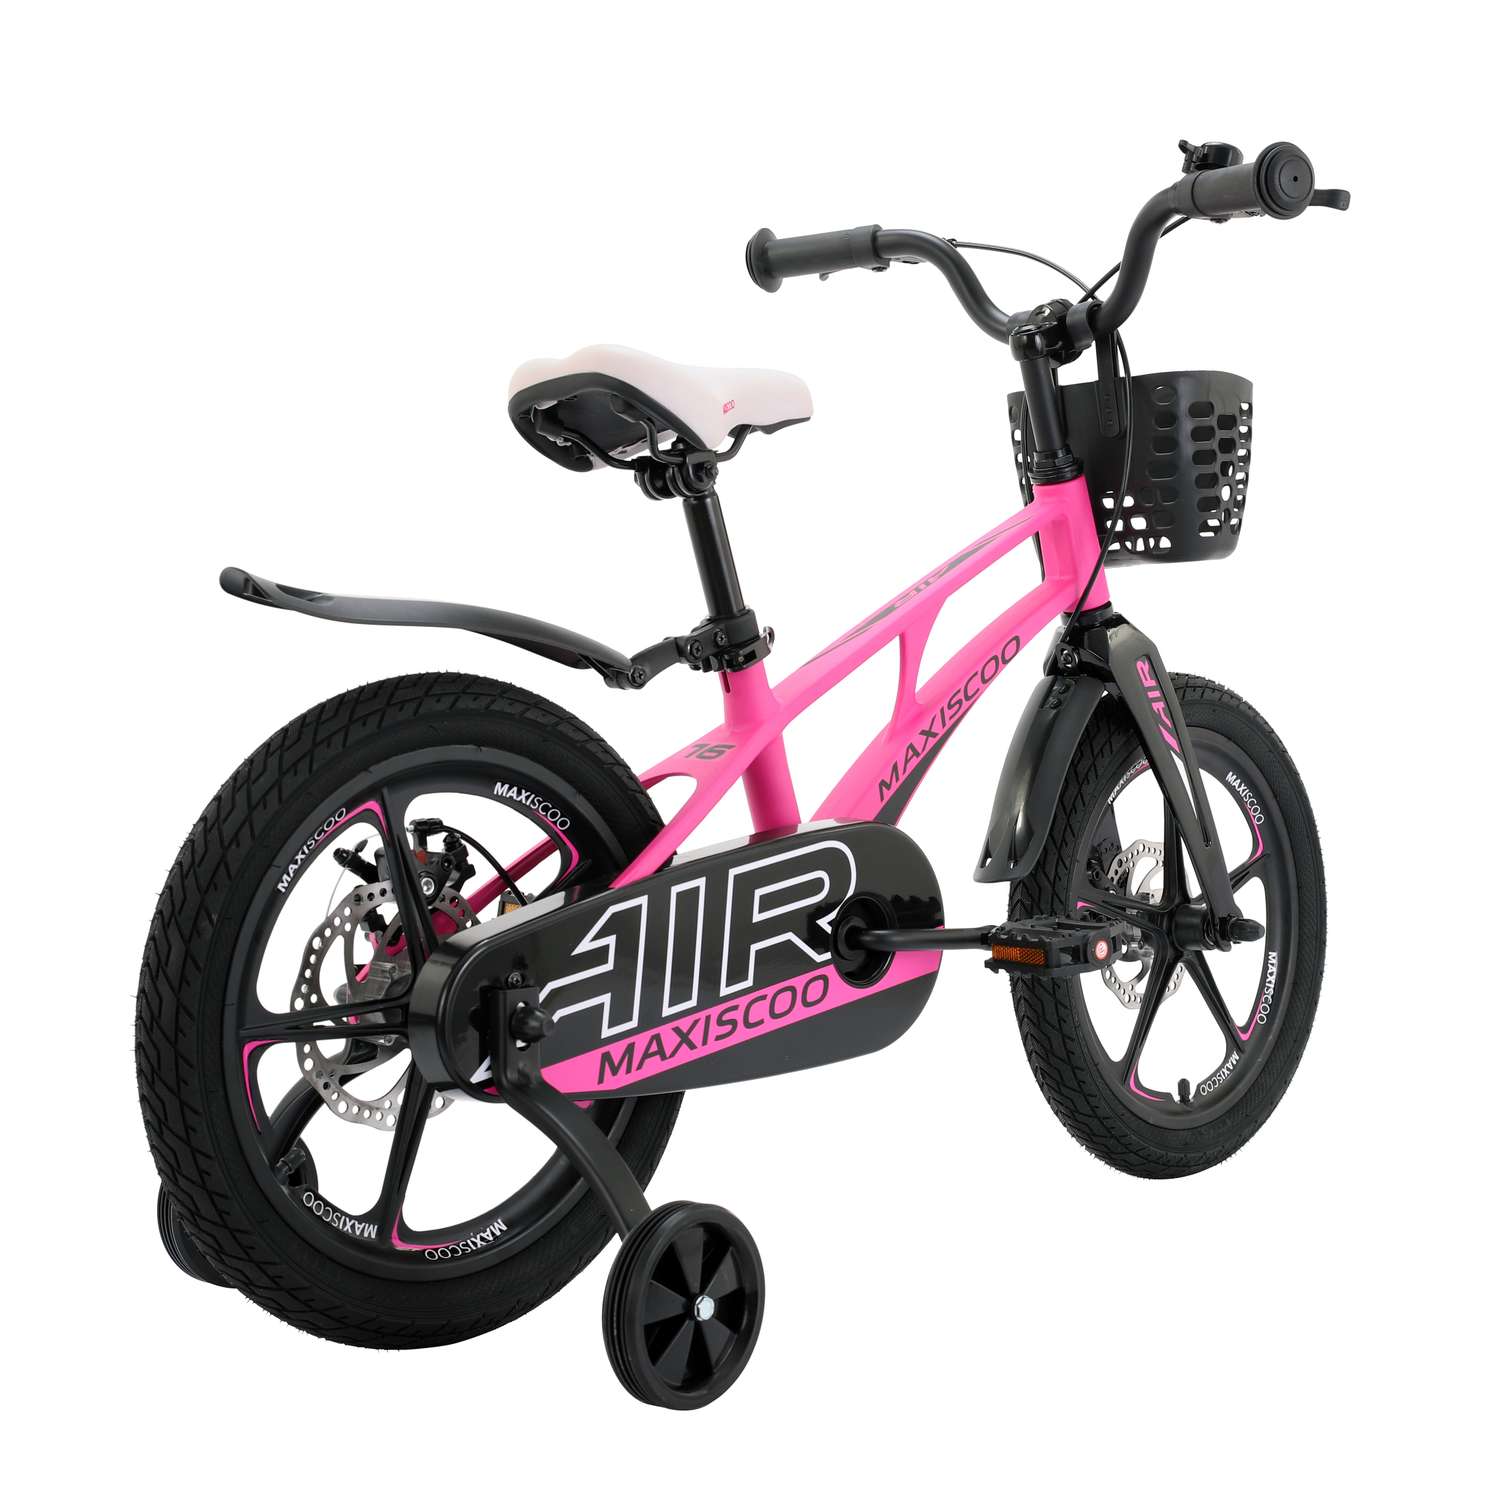 Детский двухколесный велосипед Maxiscoo Airделюкс плюс 16 розовый матовый - фото 4